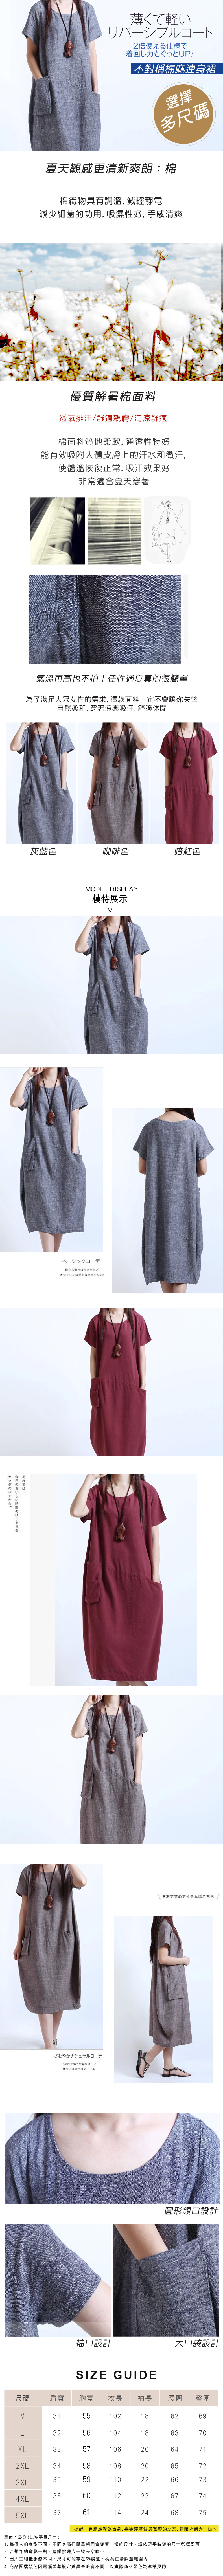 【LANNI 藍尼】現貨 不對稱連身裙-3色(M-5XL/大尺碼)